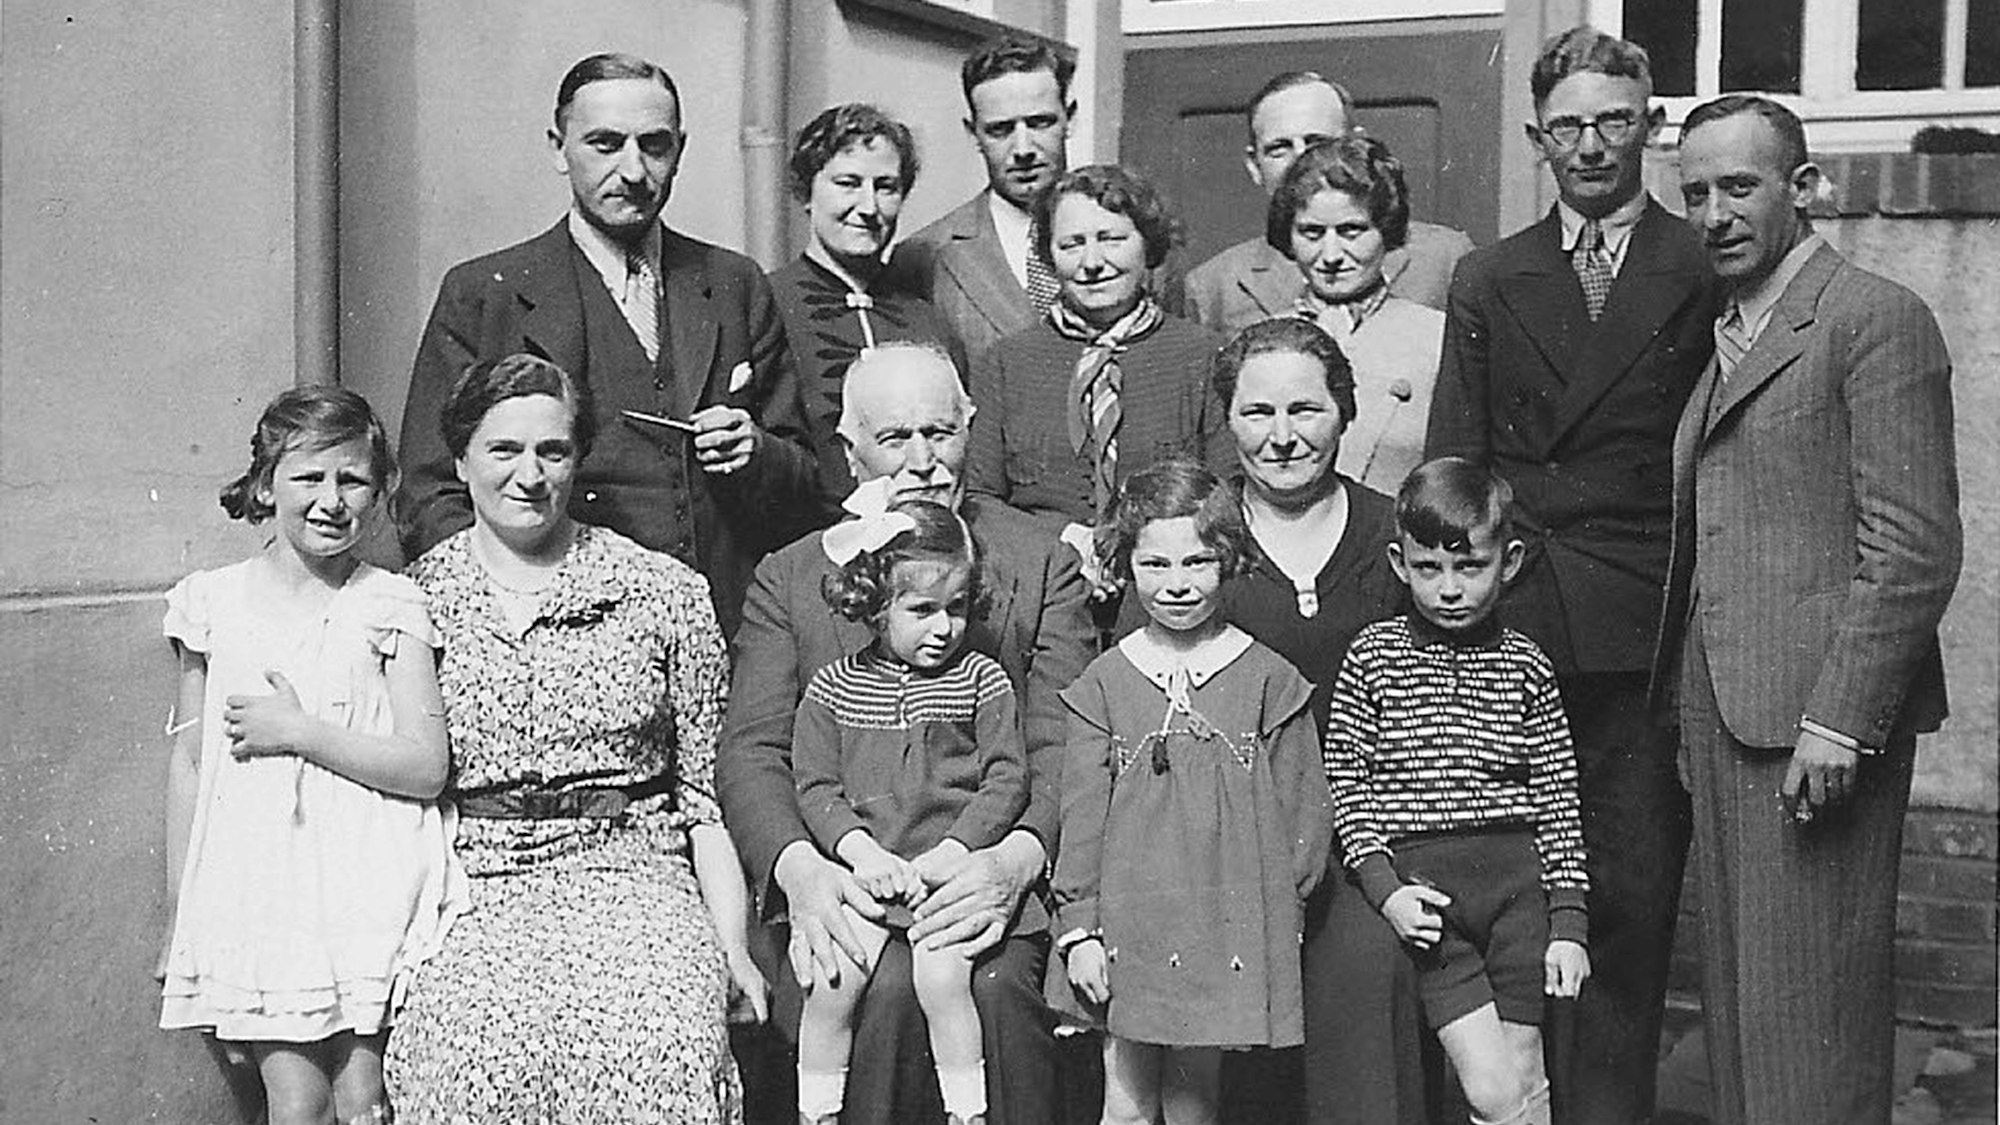 Das Foto der Familie Heumann aus Hellenthal wurde 1938 aufgenommen.